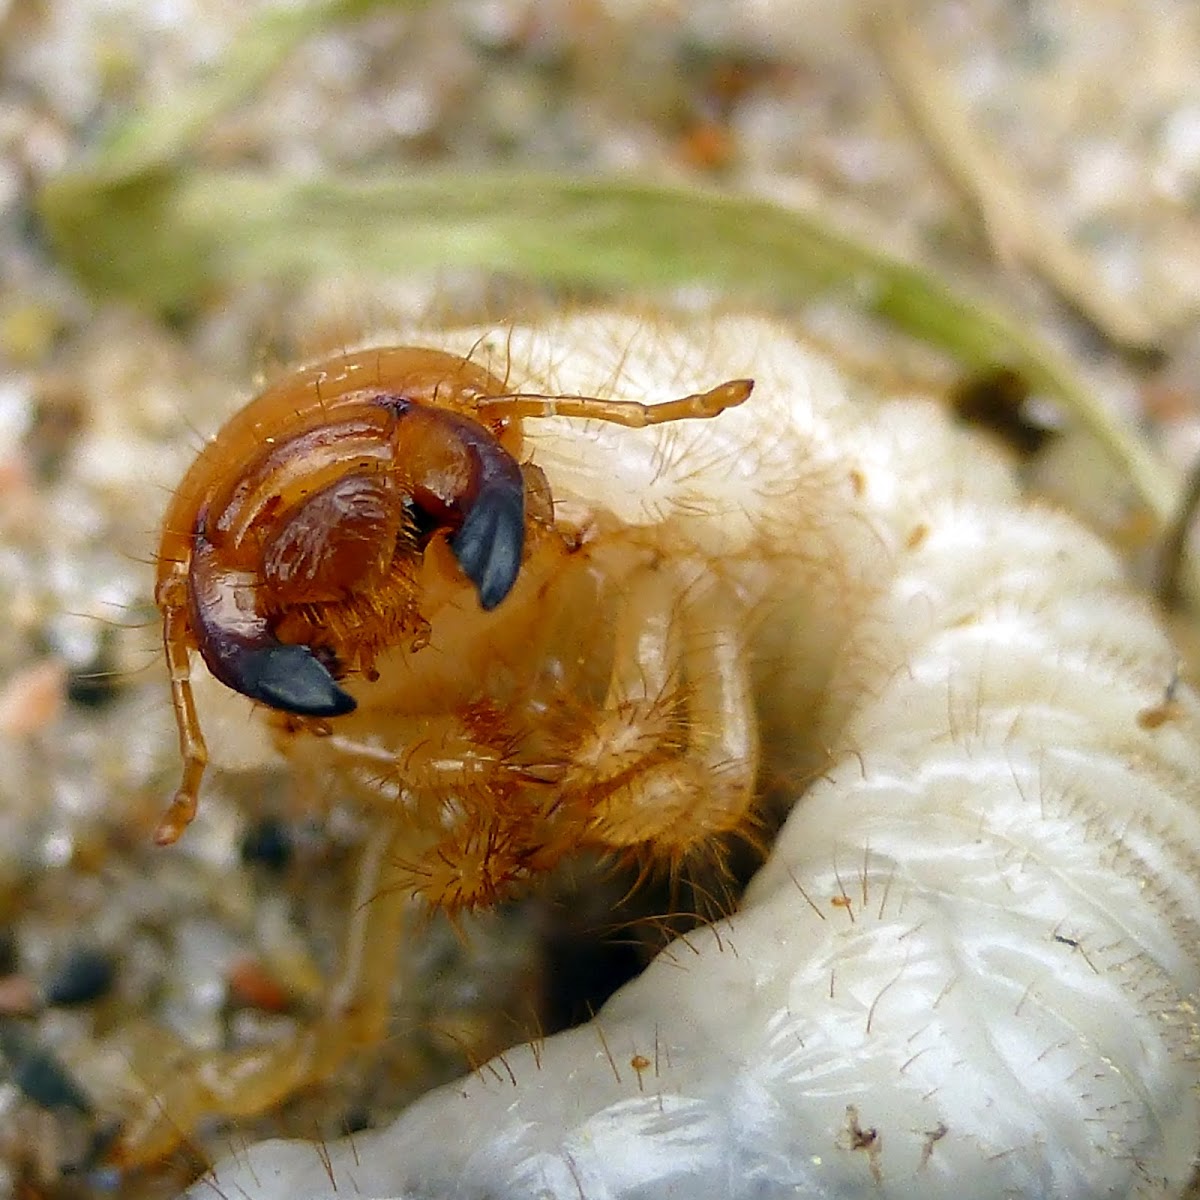 Beetle Larva/Grub